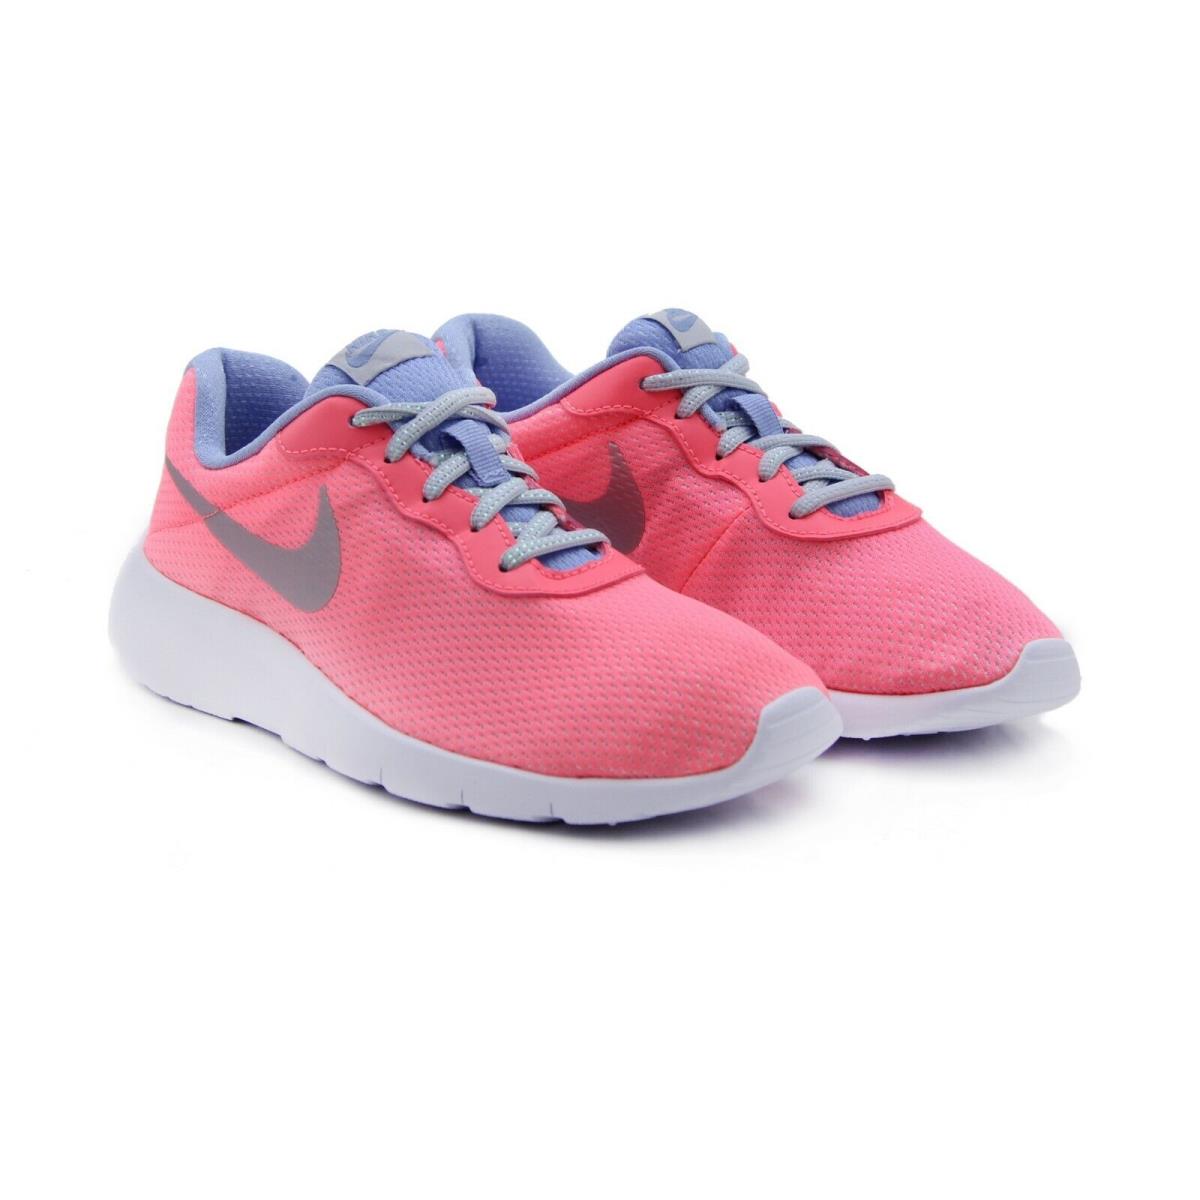 Nike Tanjun SE Running Shoes 859617-600 Big Kid`s GS Youth Size: 4.5 - Pink